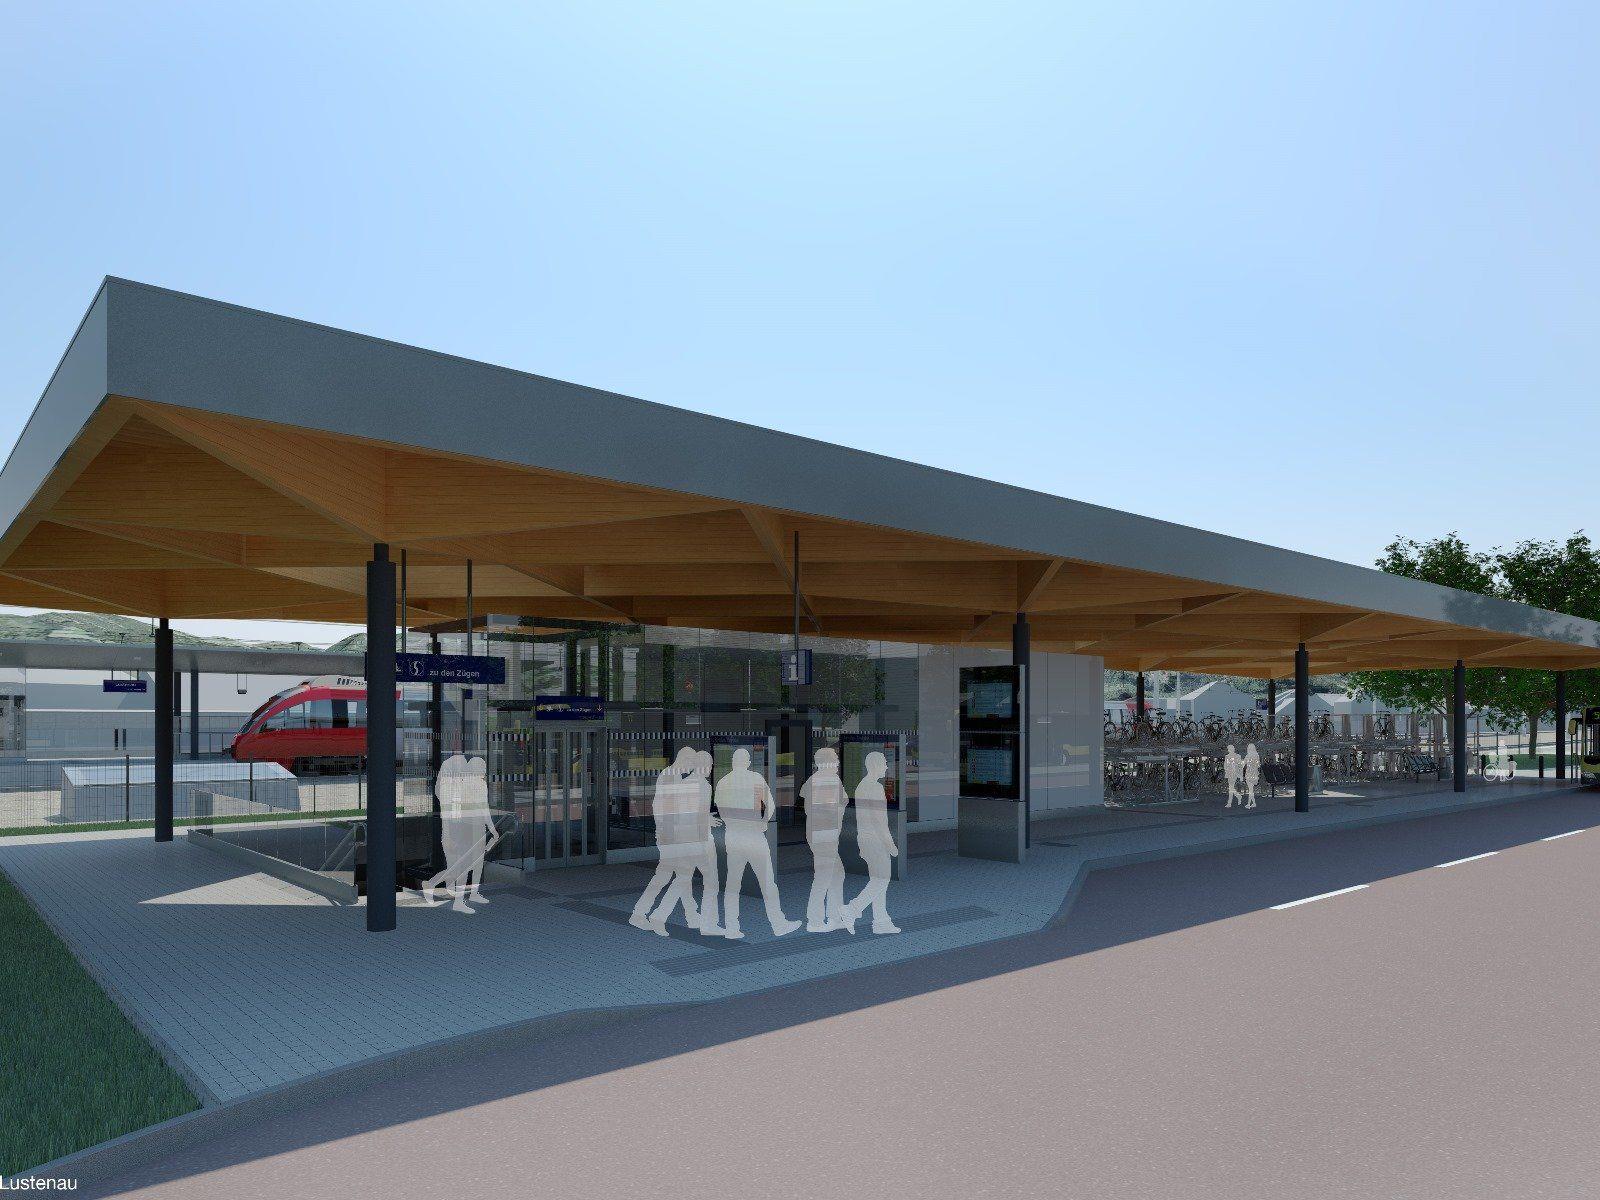 Der neue Bahnhof Lustenau wird als Drehscheibe für Bahn- und Busverkehr konzipiert.